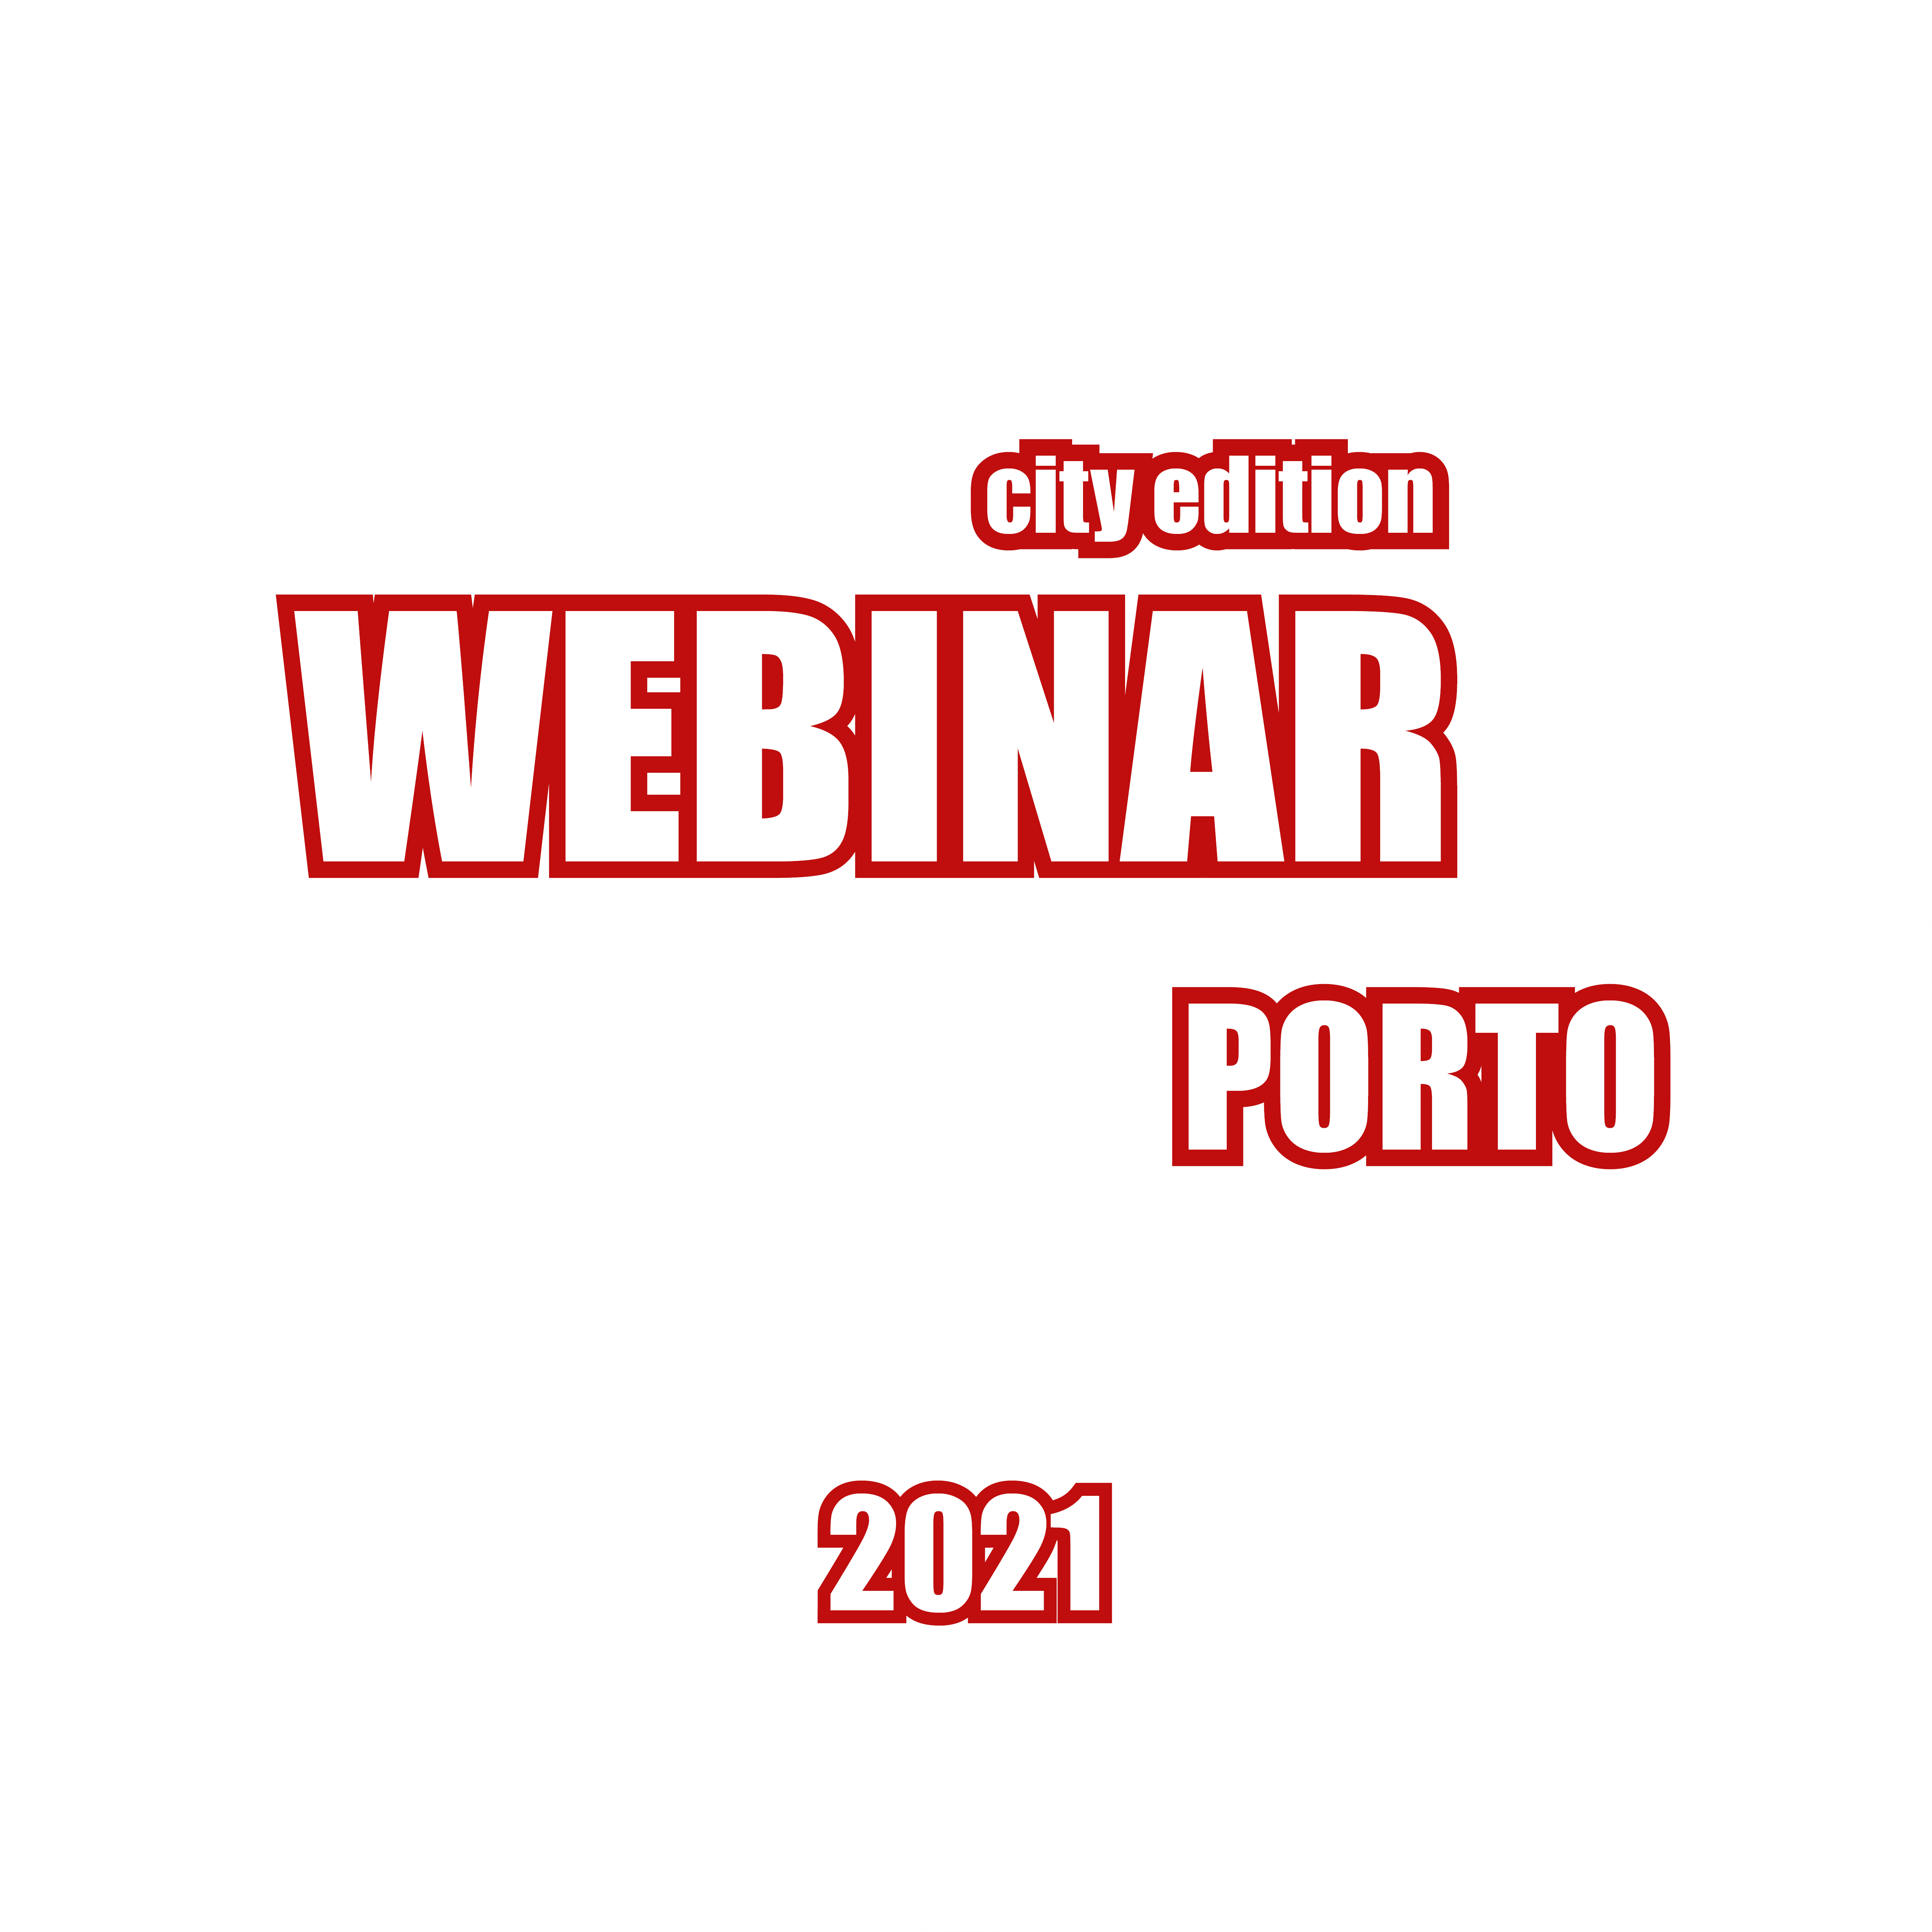 Future Design of Streets Porto Edition